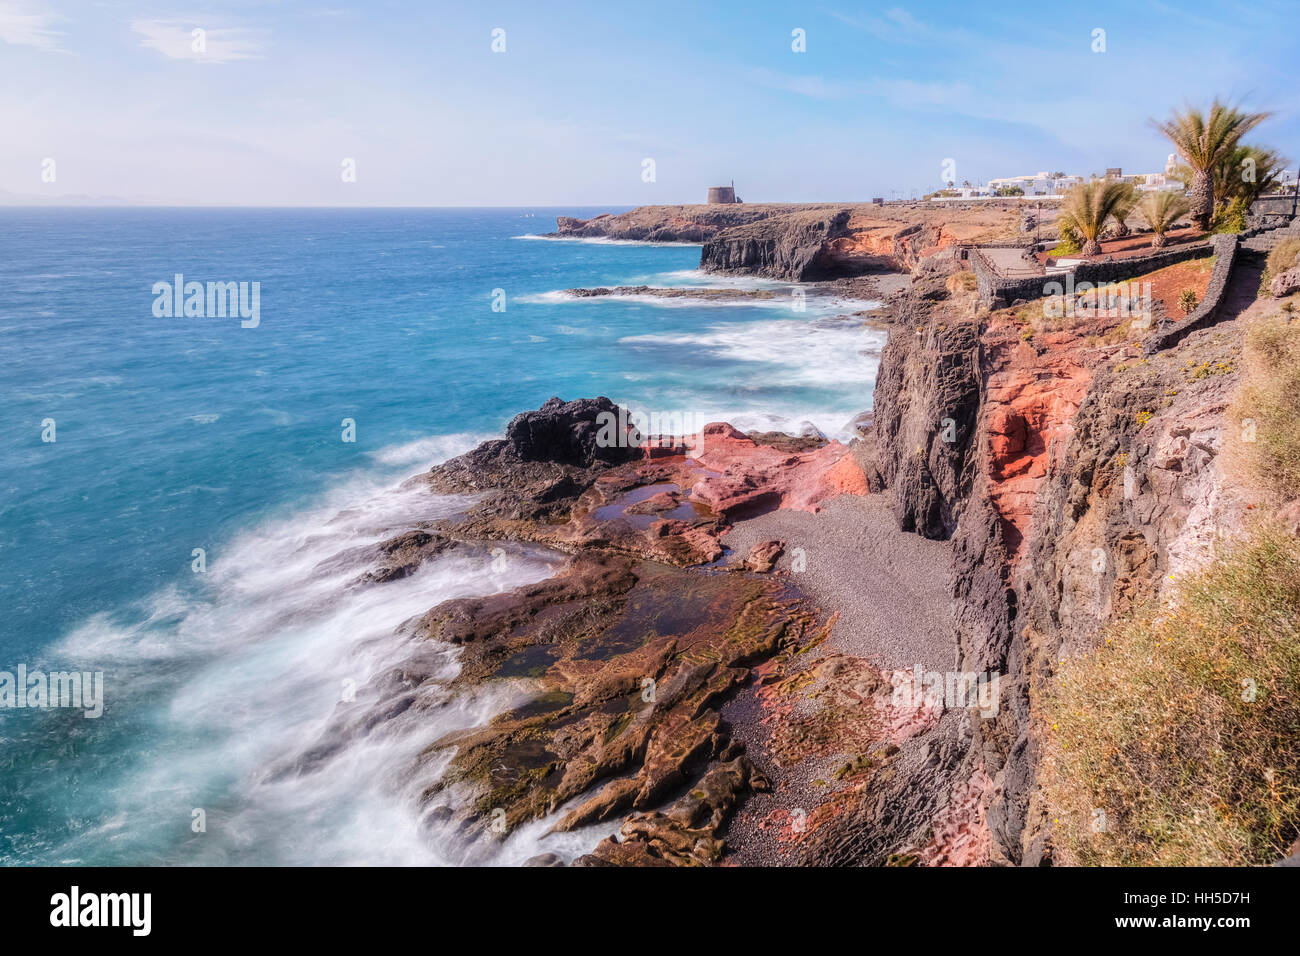 Castillo de las Coloradas, Playa Blanca, Lanzarote, Canary Islands, Spain Stock Photo